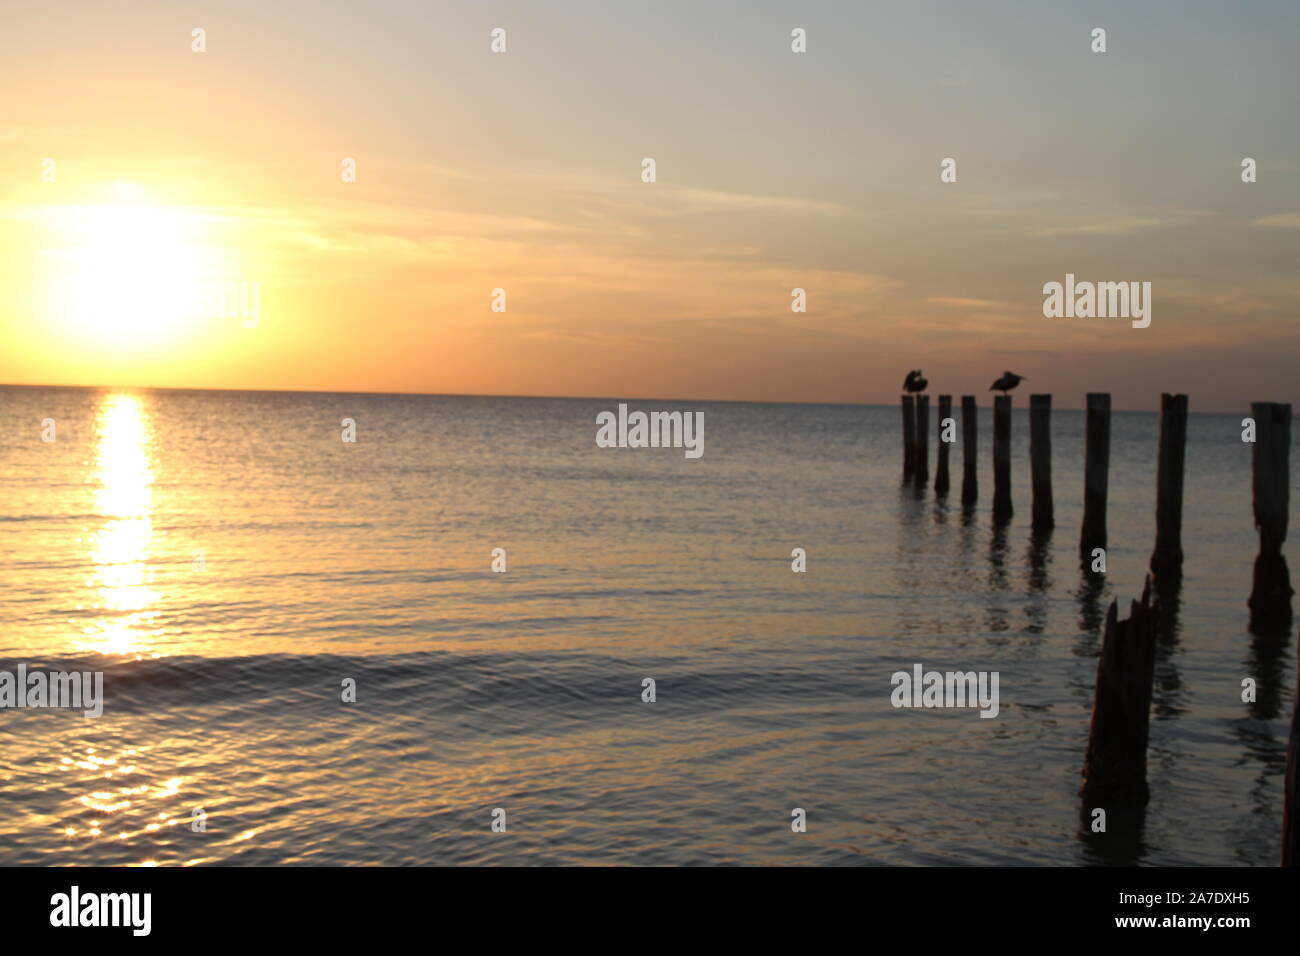 Rangée de billes de bois planté dans l'océan au coucher du soleil Banque D'Images